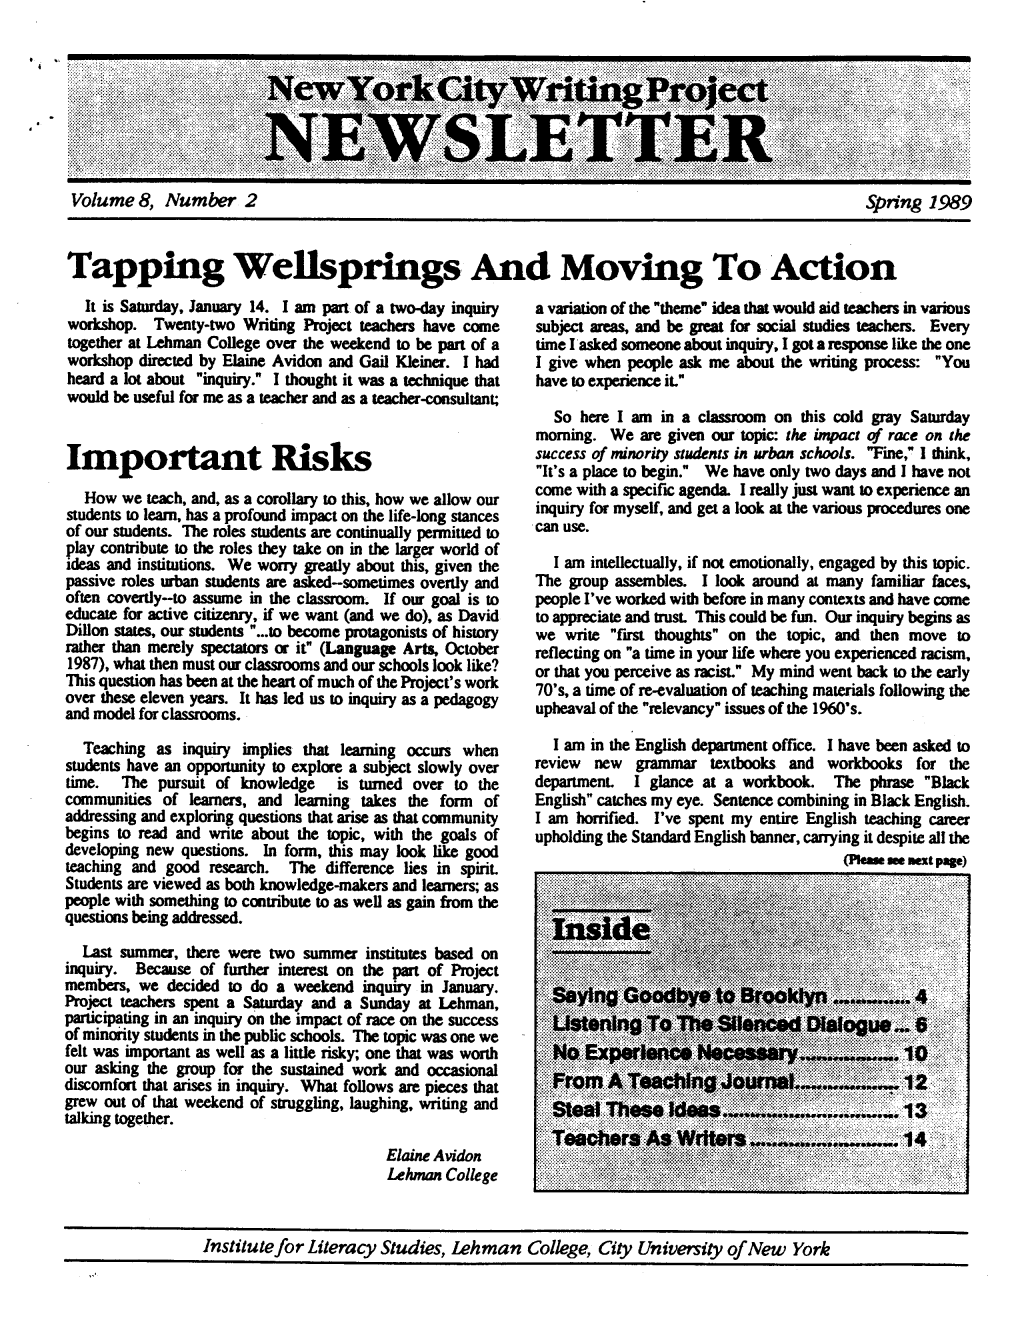 Spring 1989 Newsletter